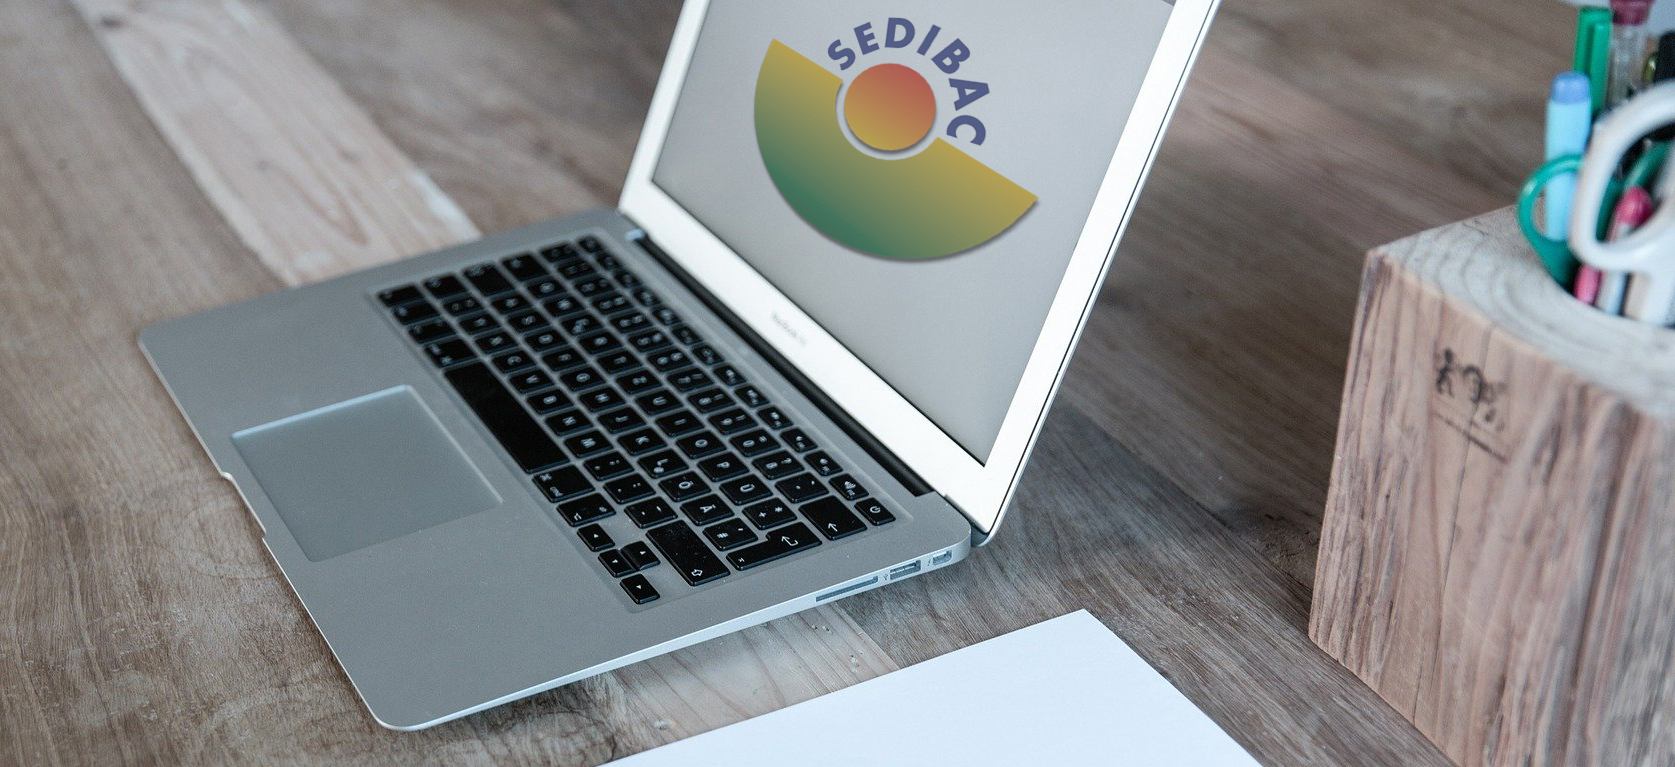 Ordinador portàtil amb el logotip de SEDIBAC